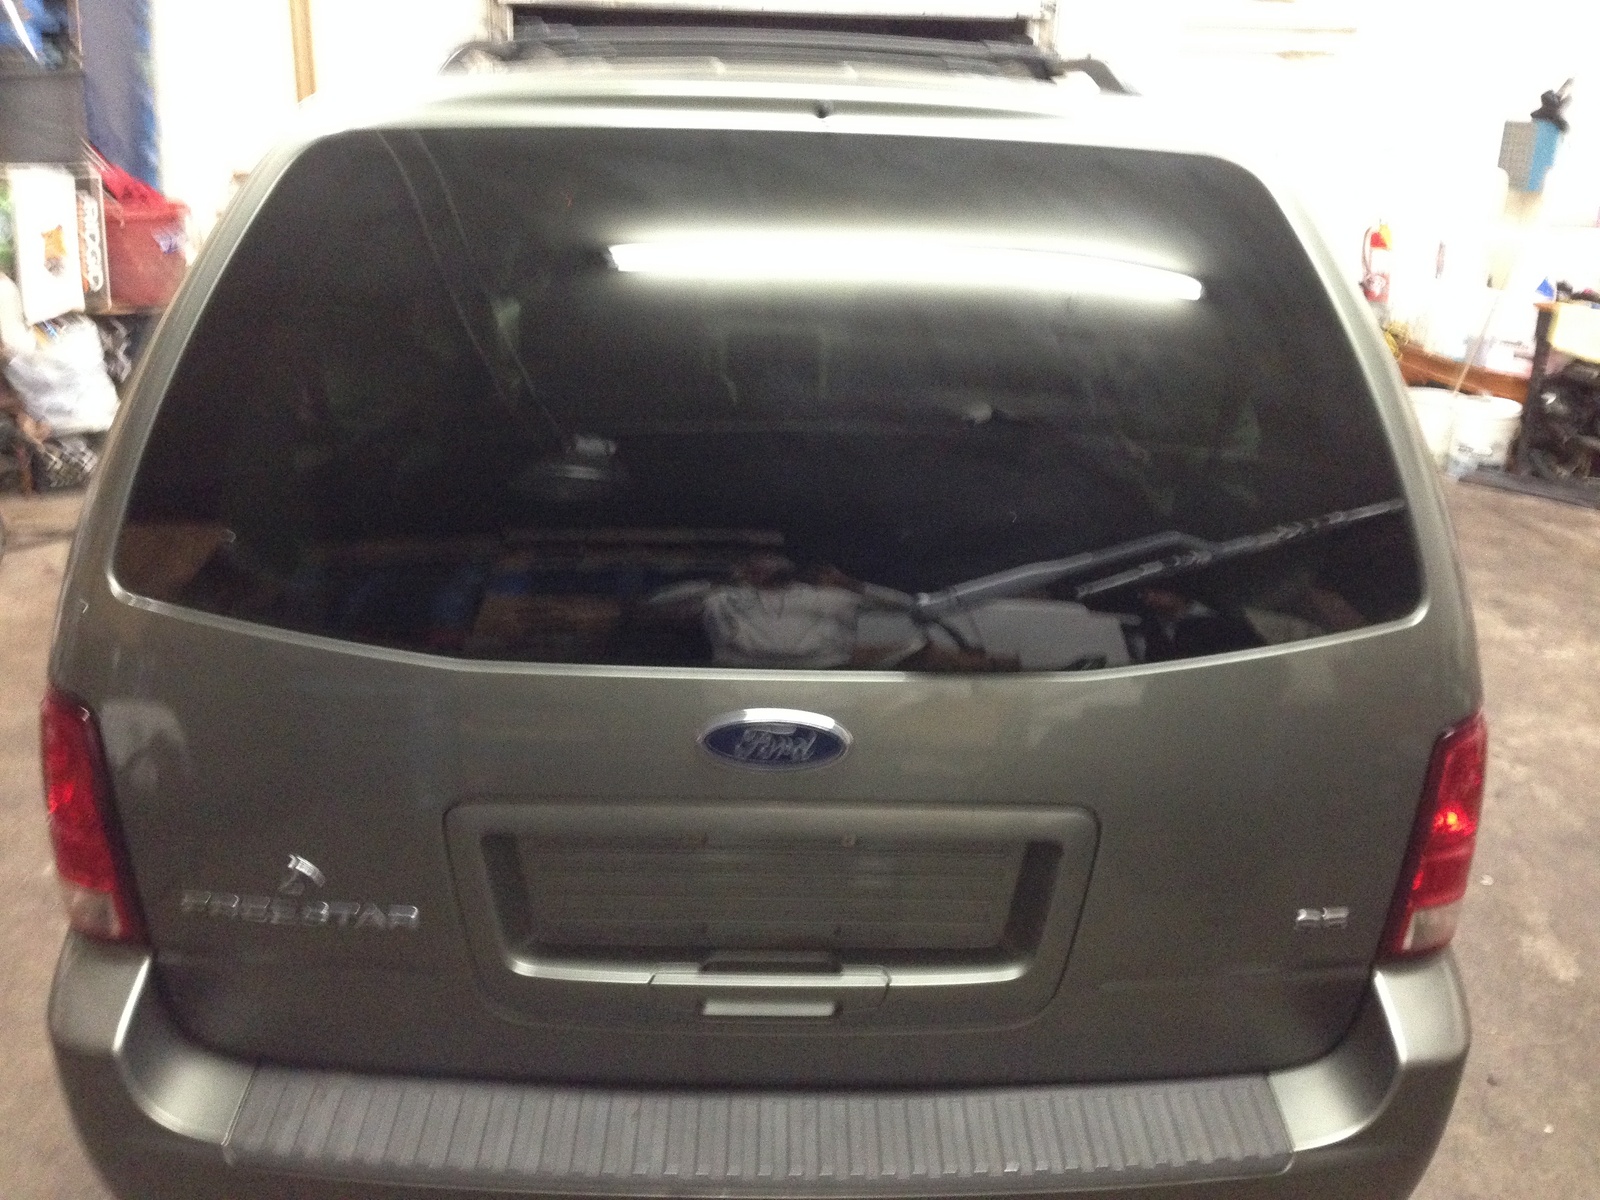 Ford freestar rear hatch handle #9